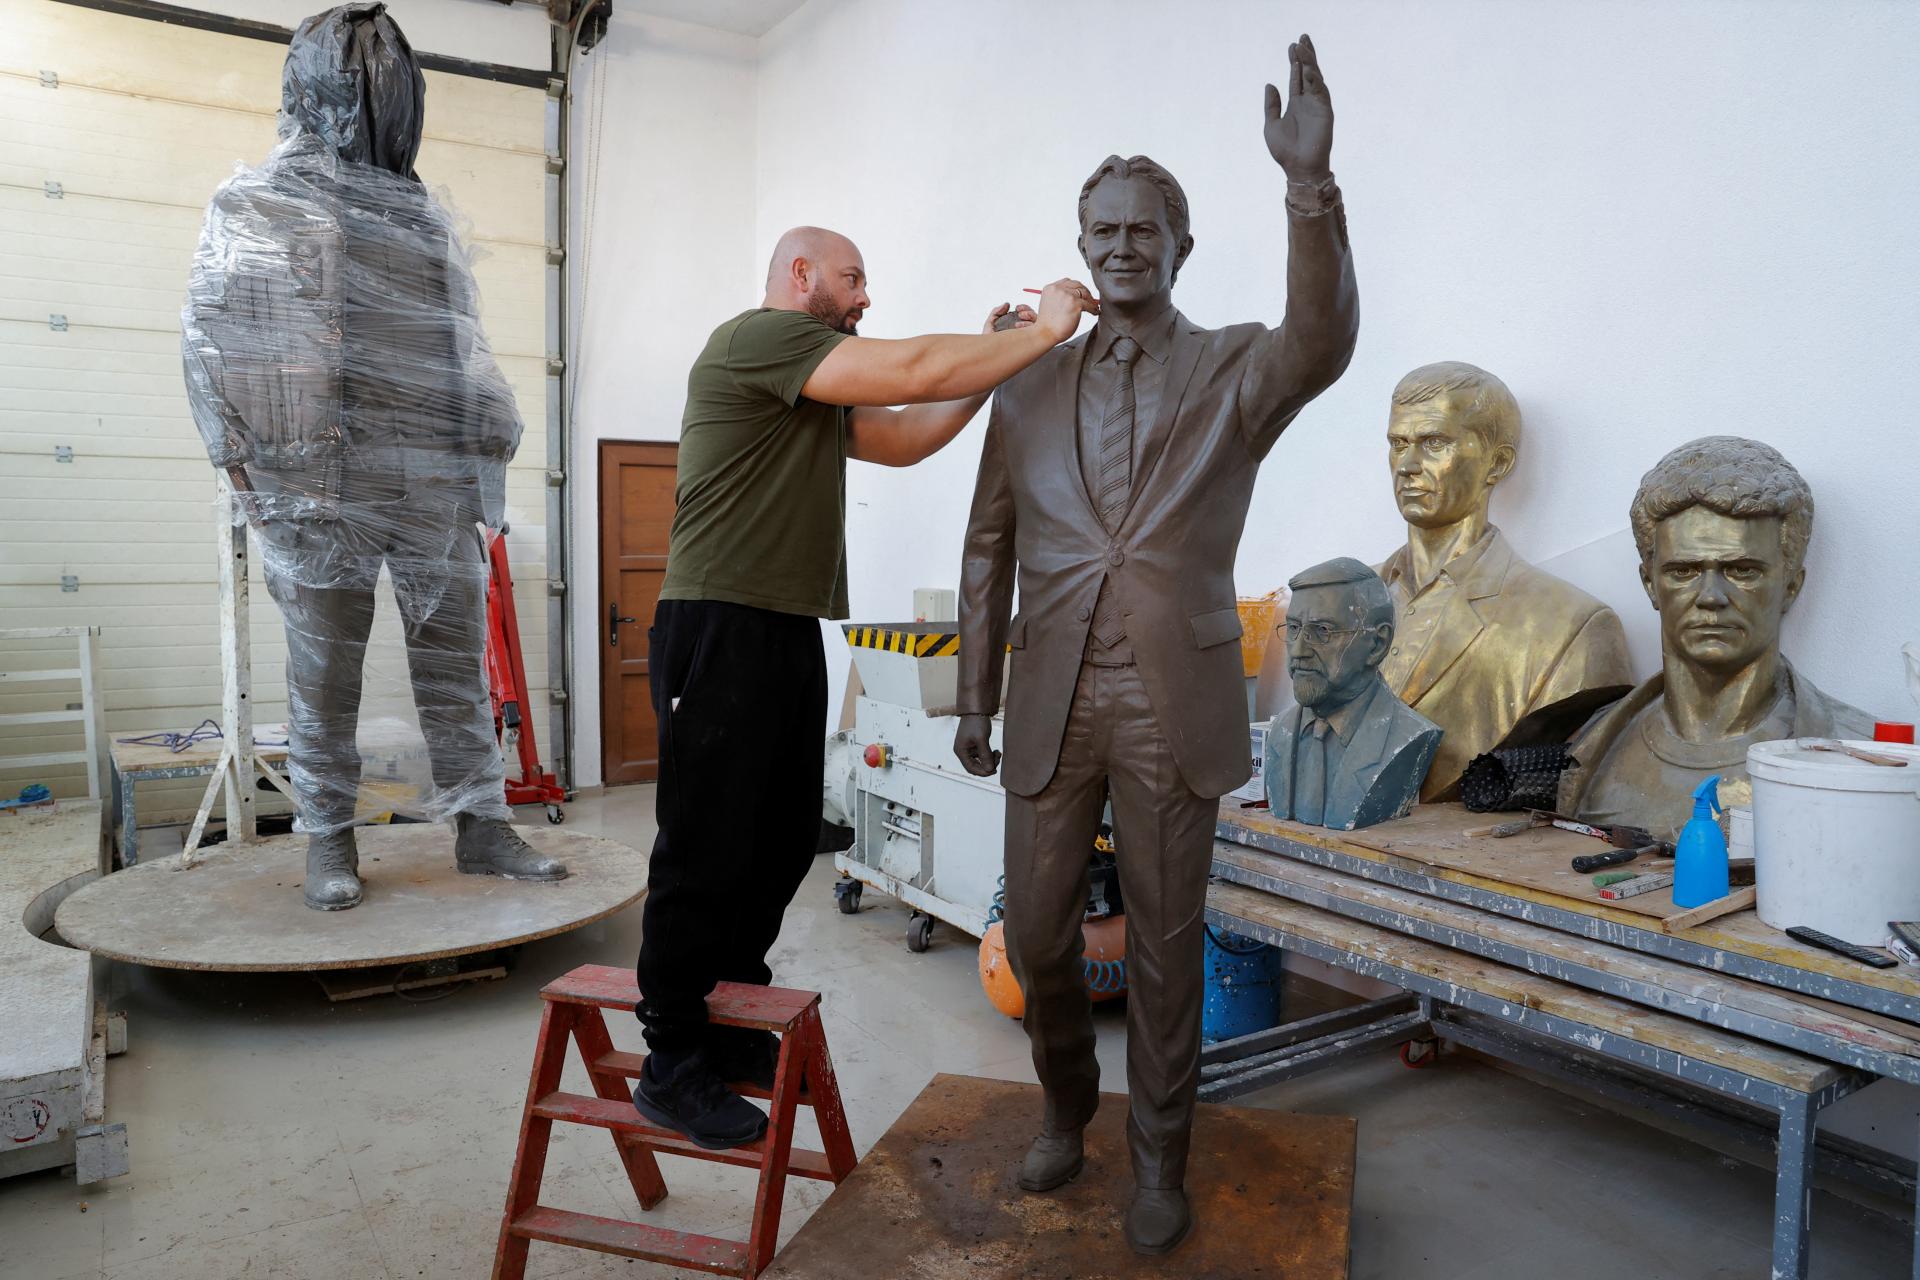 V Kosove kvitne kult britského expremiéra Tonyho Blaira, odhalia mu sochu